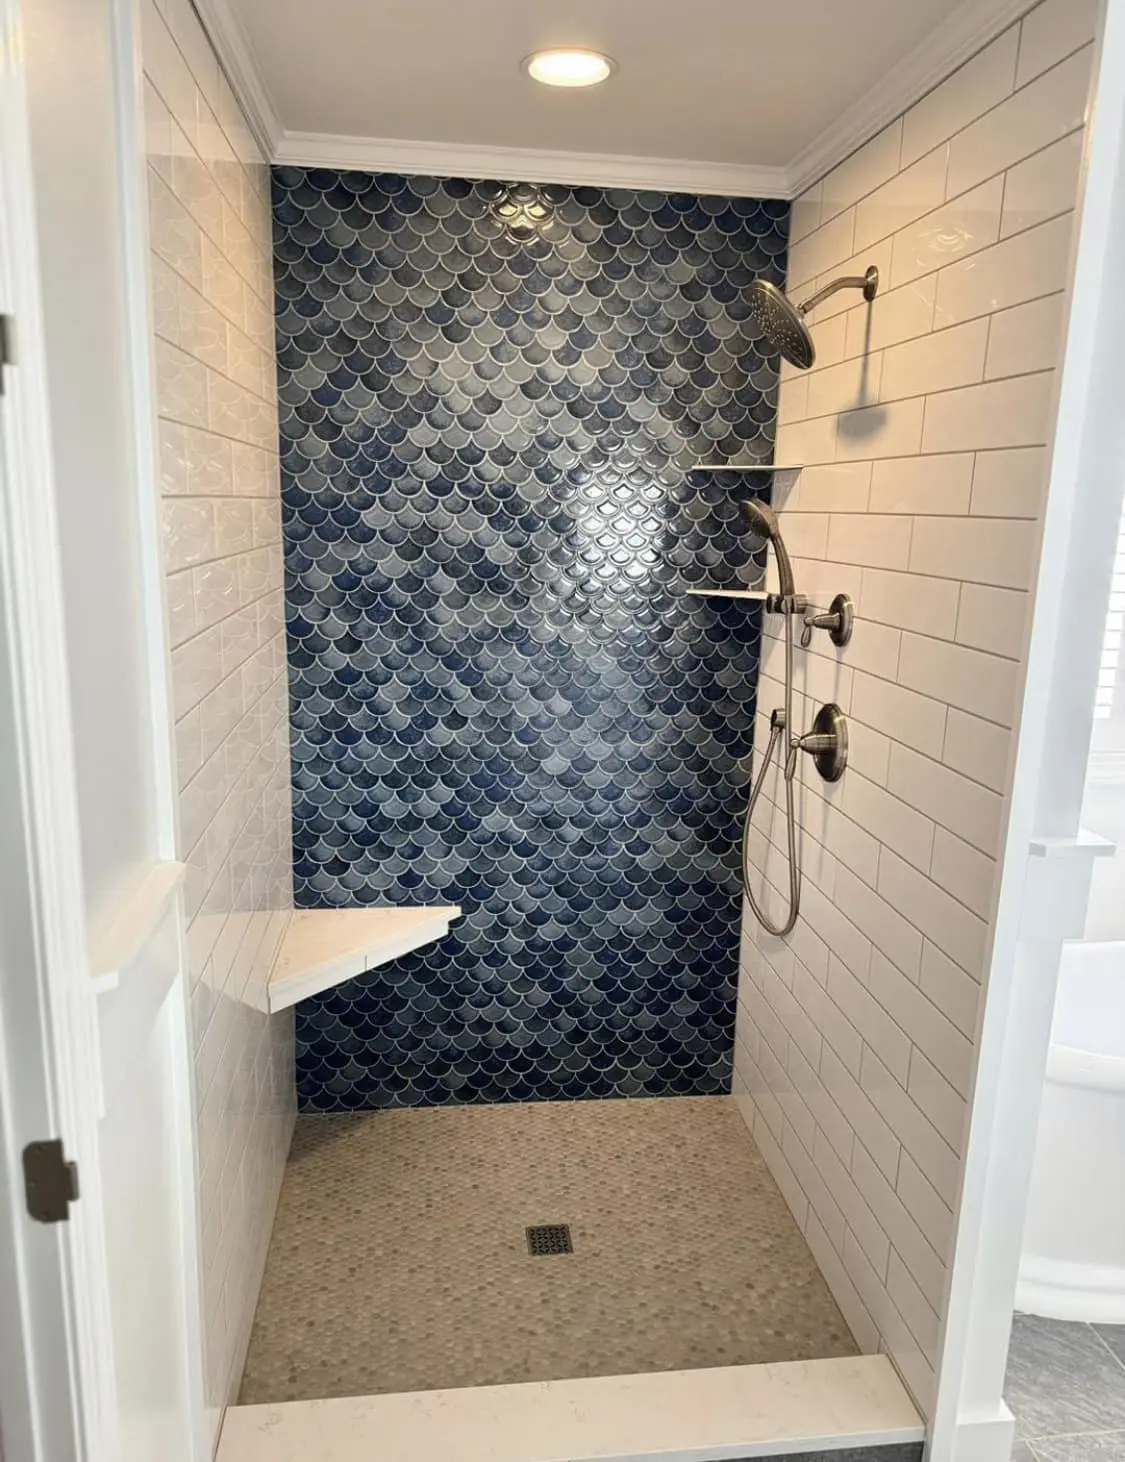 Bathroom Remodeling Shower